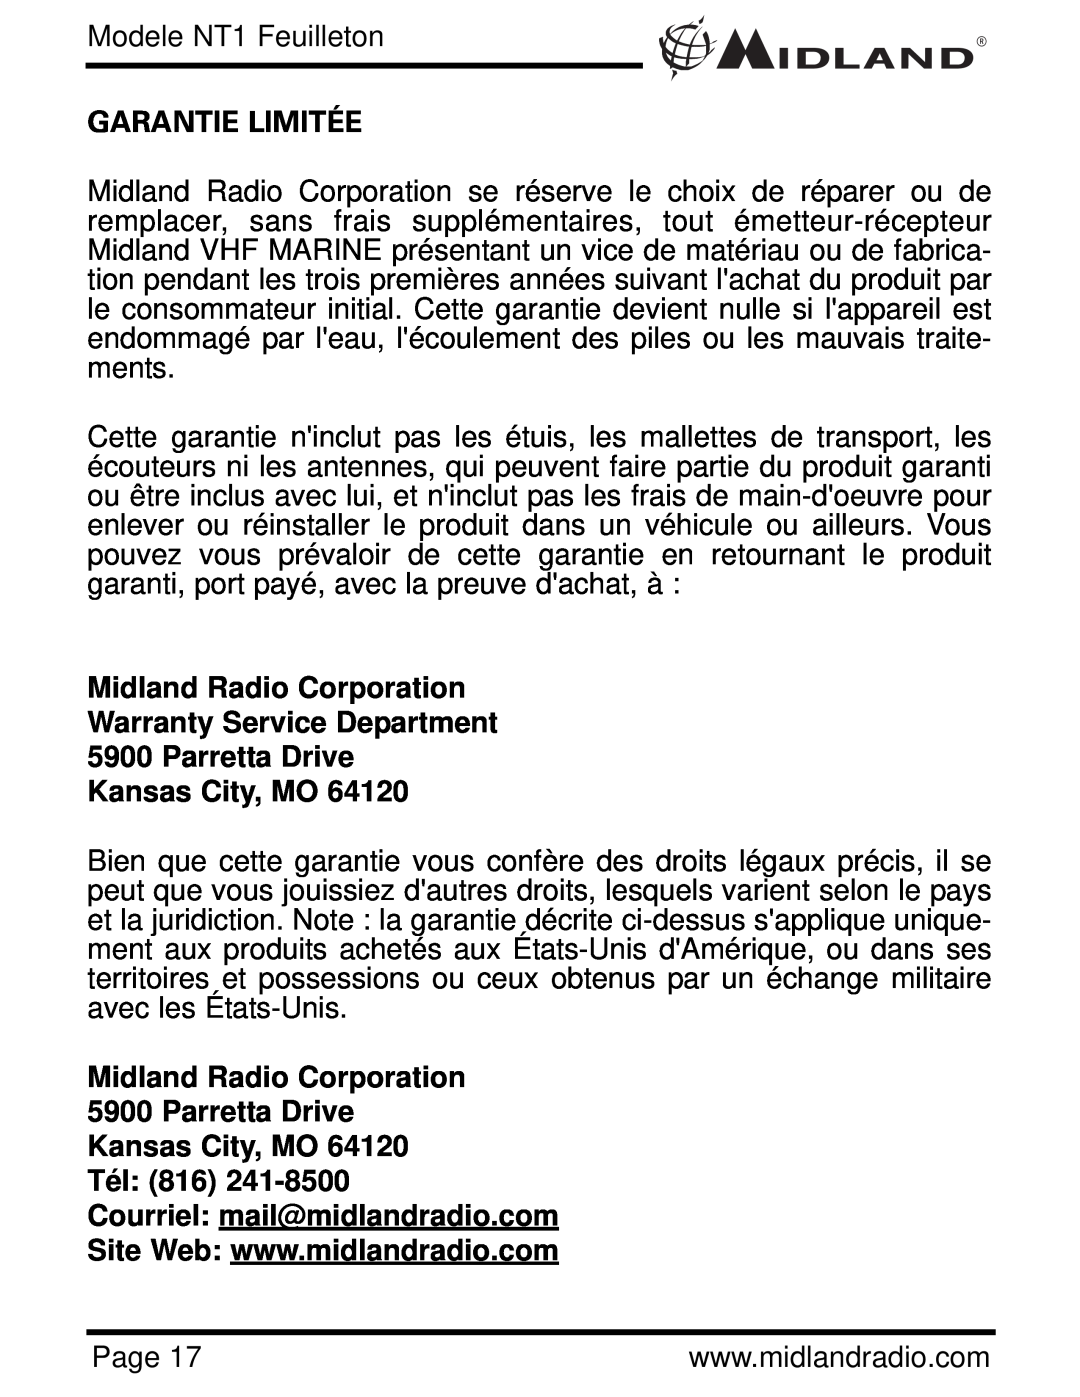 Midland Radio NT1 SERIES, NT1VP Garantie Limitée, Midland Radio Corporation 5900 Parretta Drive Kansas City, MO Tél 816 